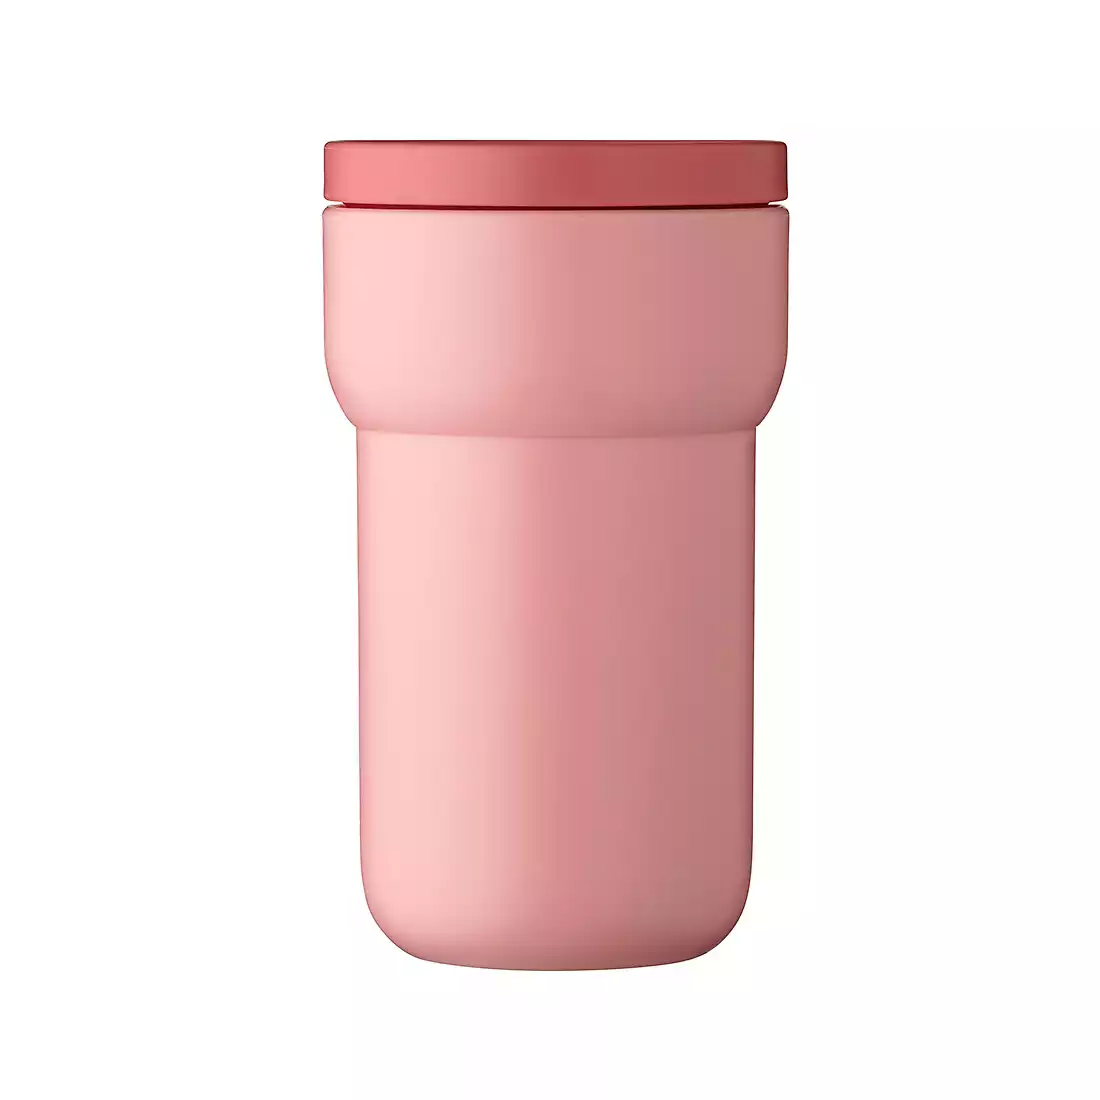 MEPAL ELLIPSE termohrnček 275 ml, nordic pink